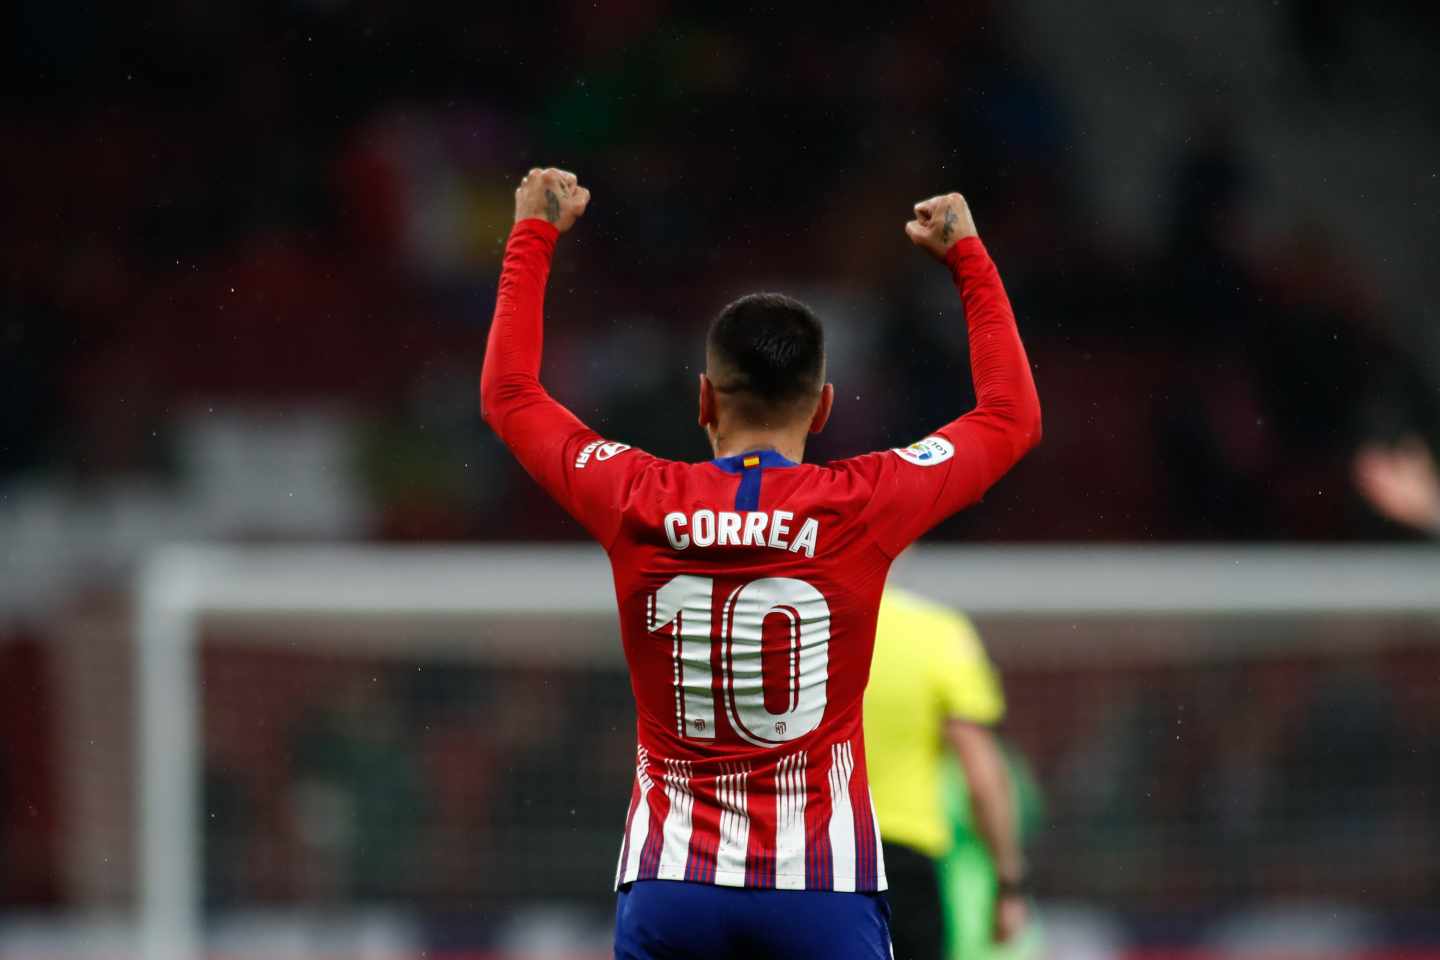 El jugador del Atlético de Madrid Angelito Correa celebra un gol.